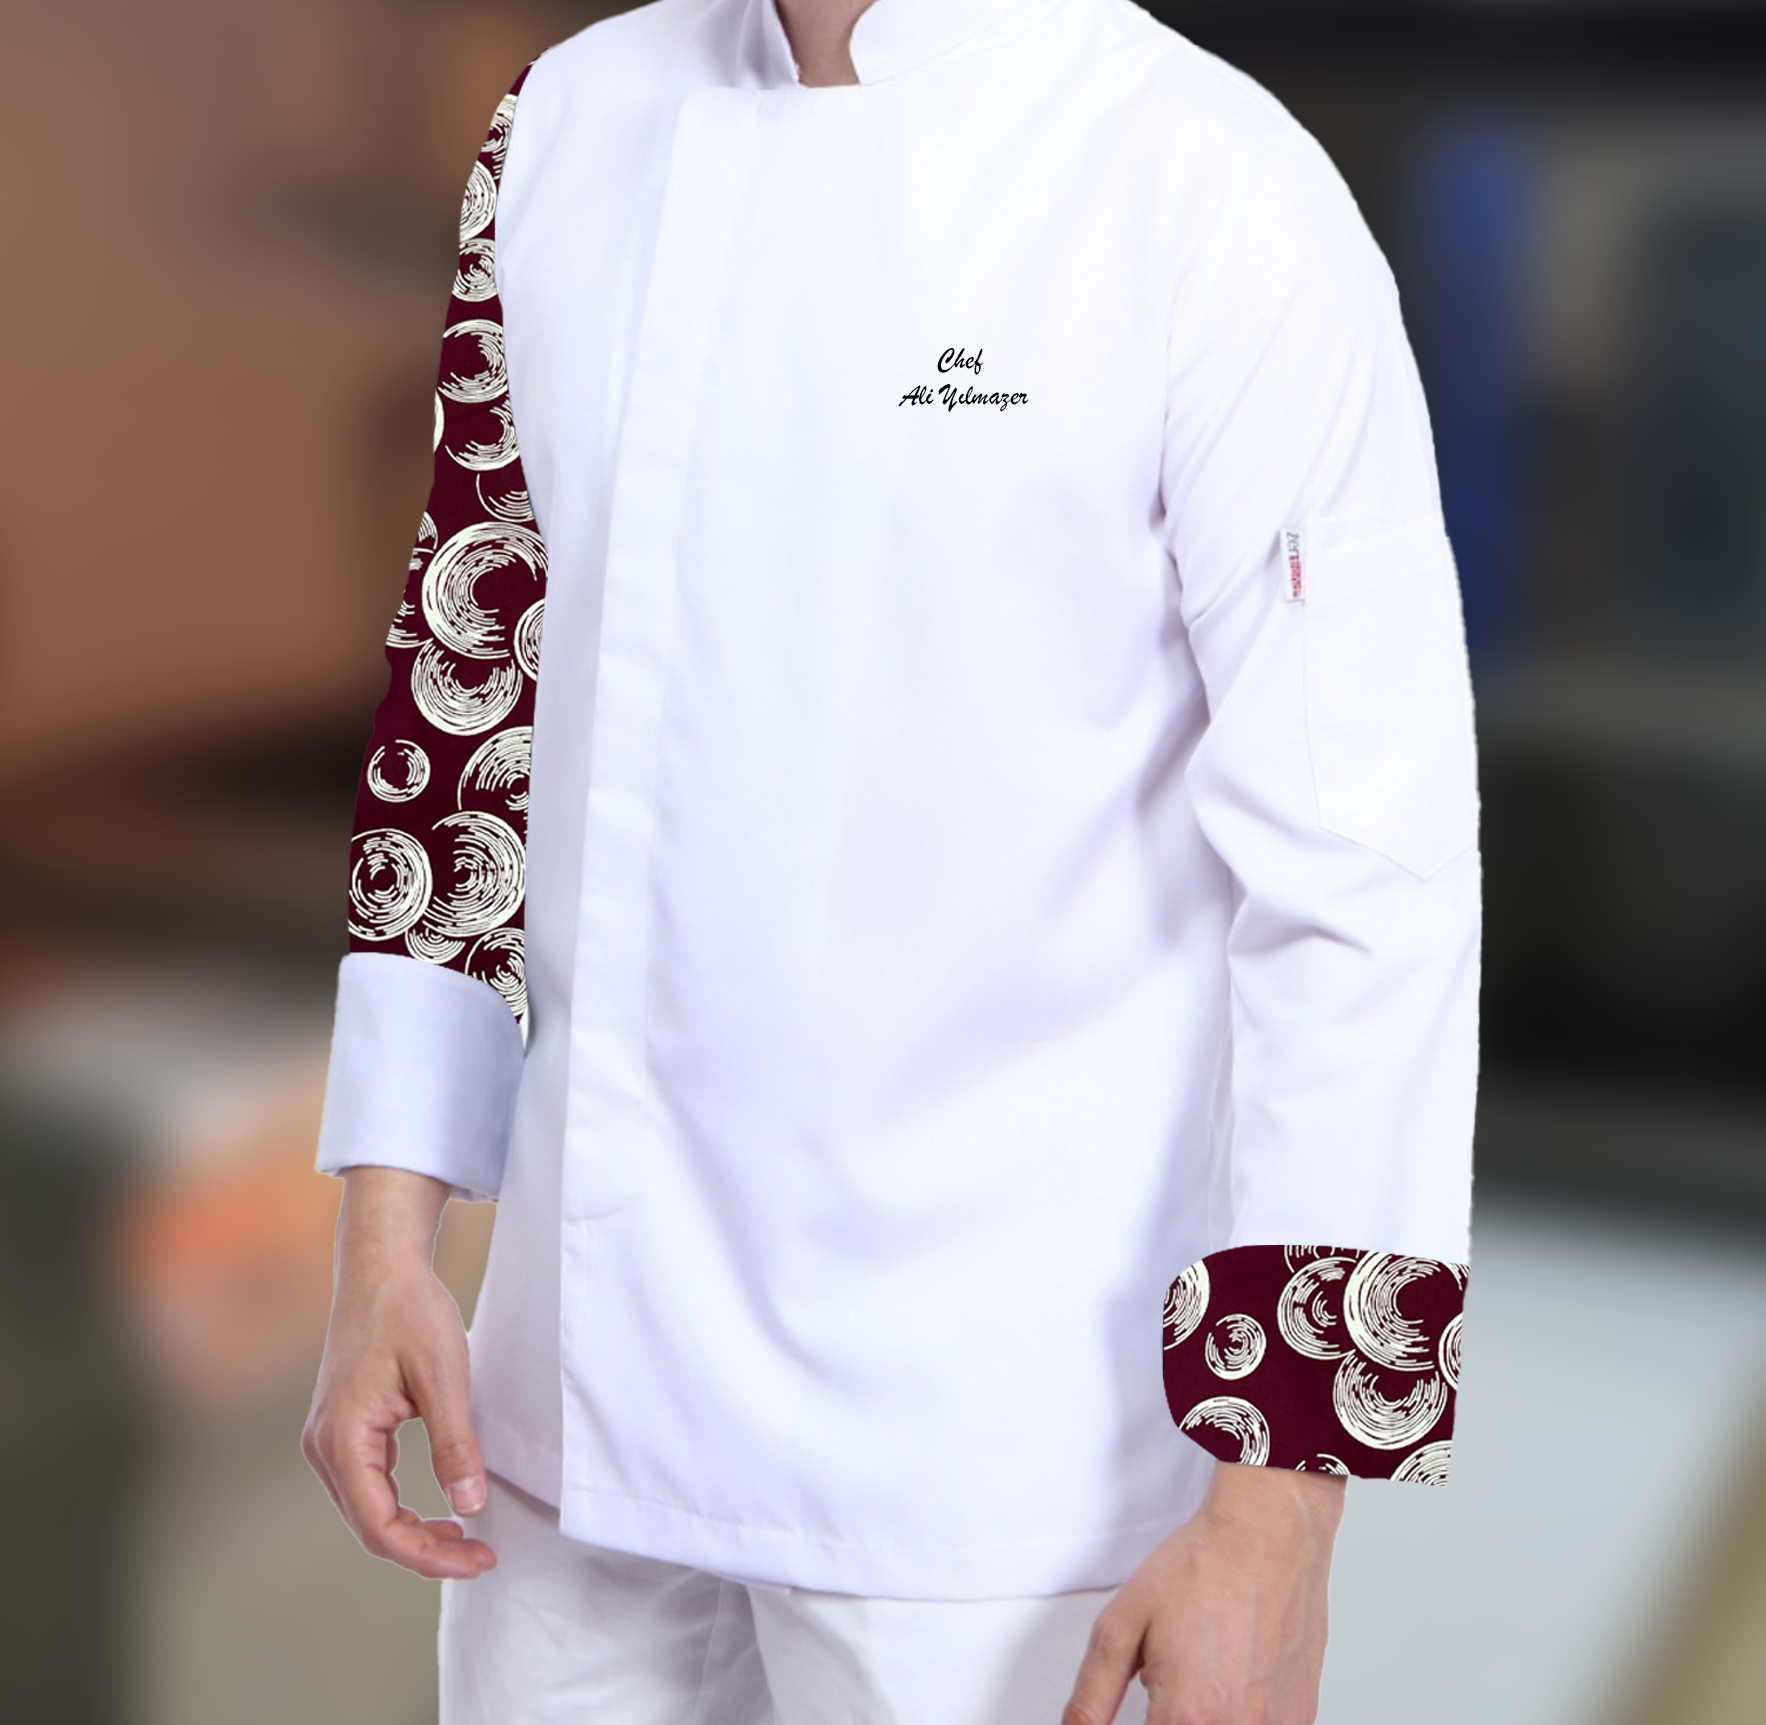 Kolu Bordo Desenli Şef Aşçı Ceketi - En Yeni Aşçı Ceketi Modeli